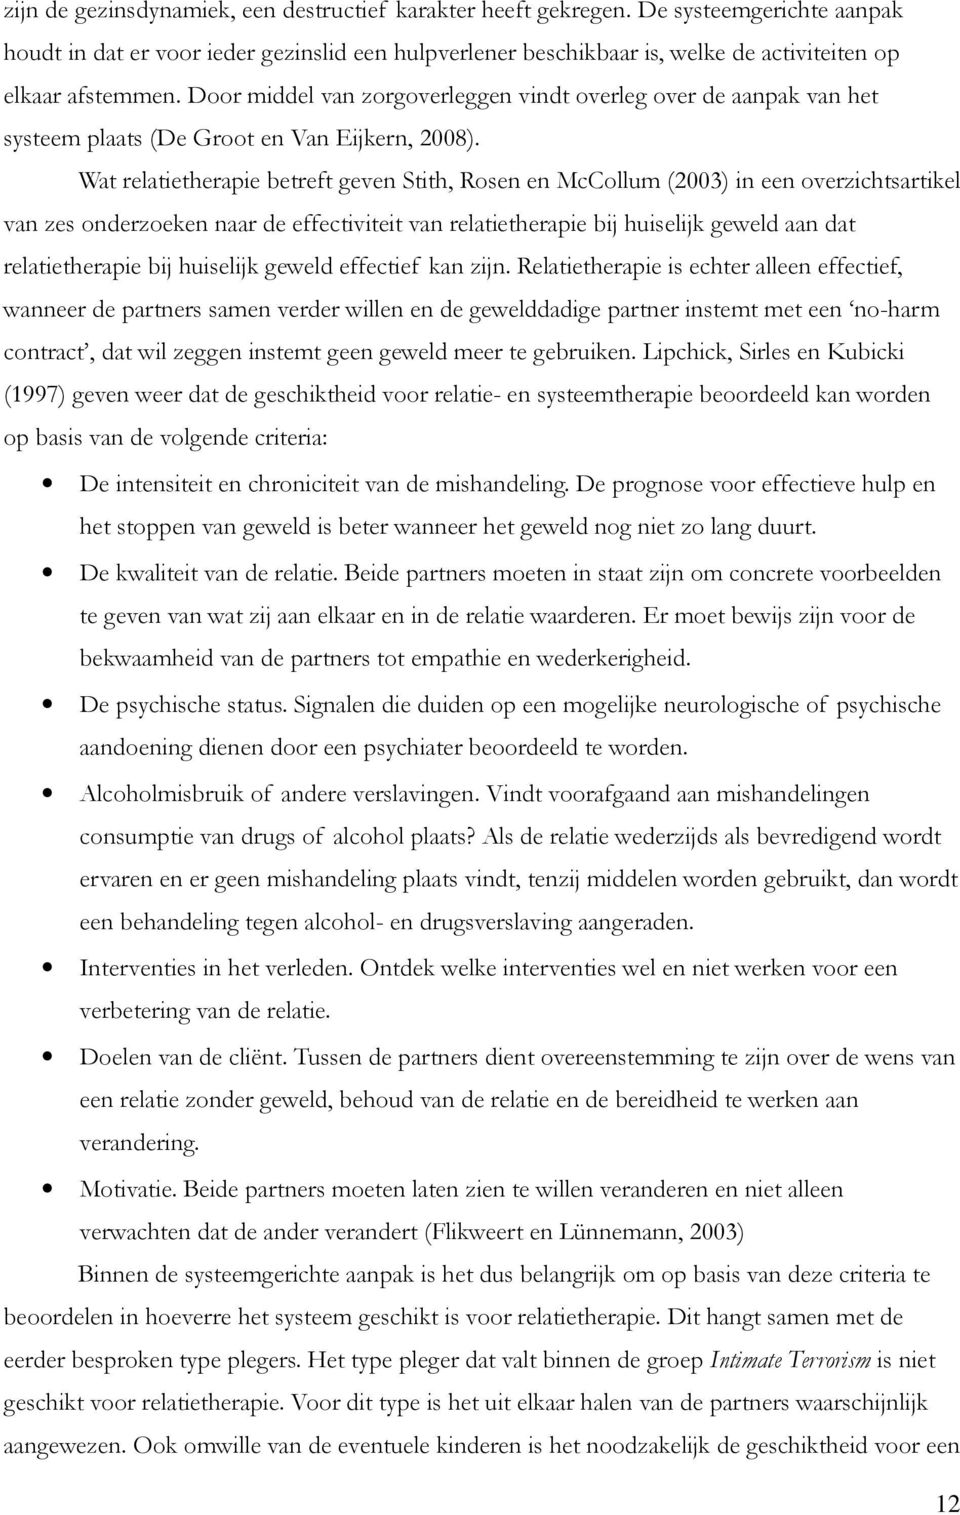 Door middel van zorgoverleggen vindt overleg over de aanpak van het systeem plaats (De Groot en Van Eijkern, 2008).